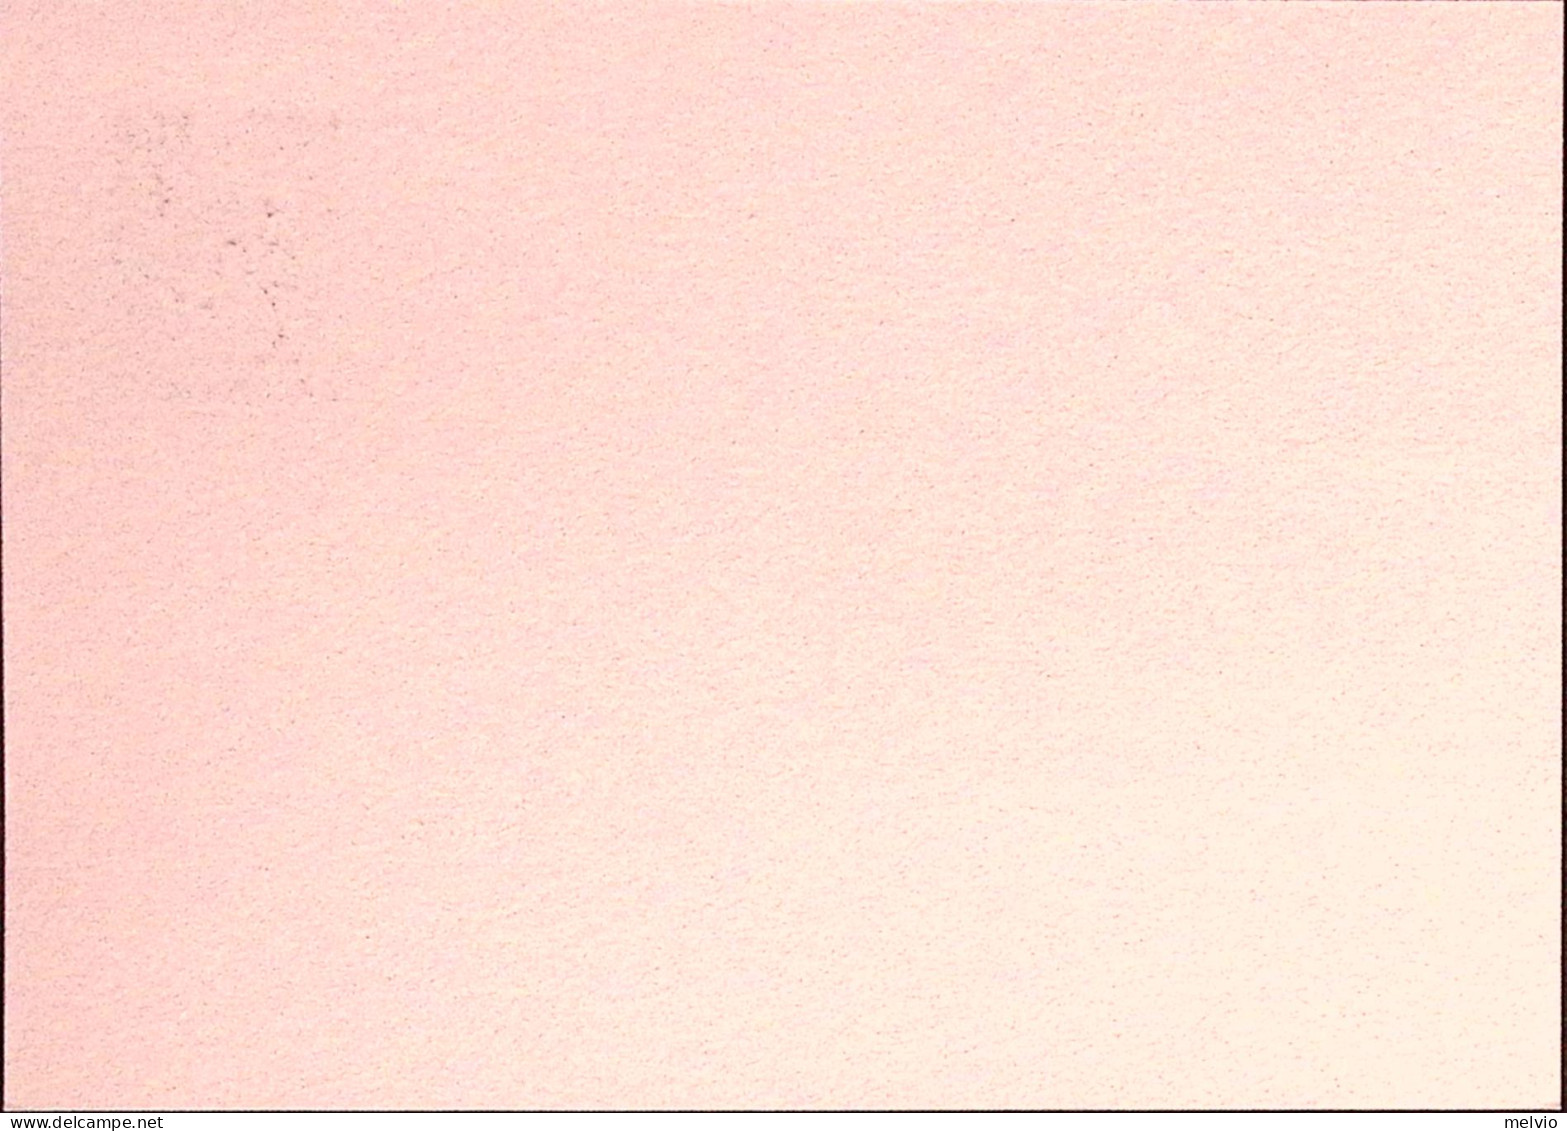 1993-ABRUZZOPHIL Cartolina Postale IPZS Lire 700 Con Ann.spec.(27.6) - Ganzsachen